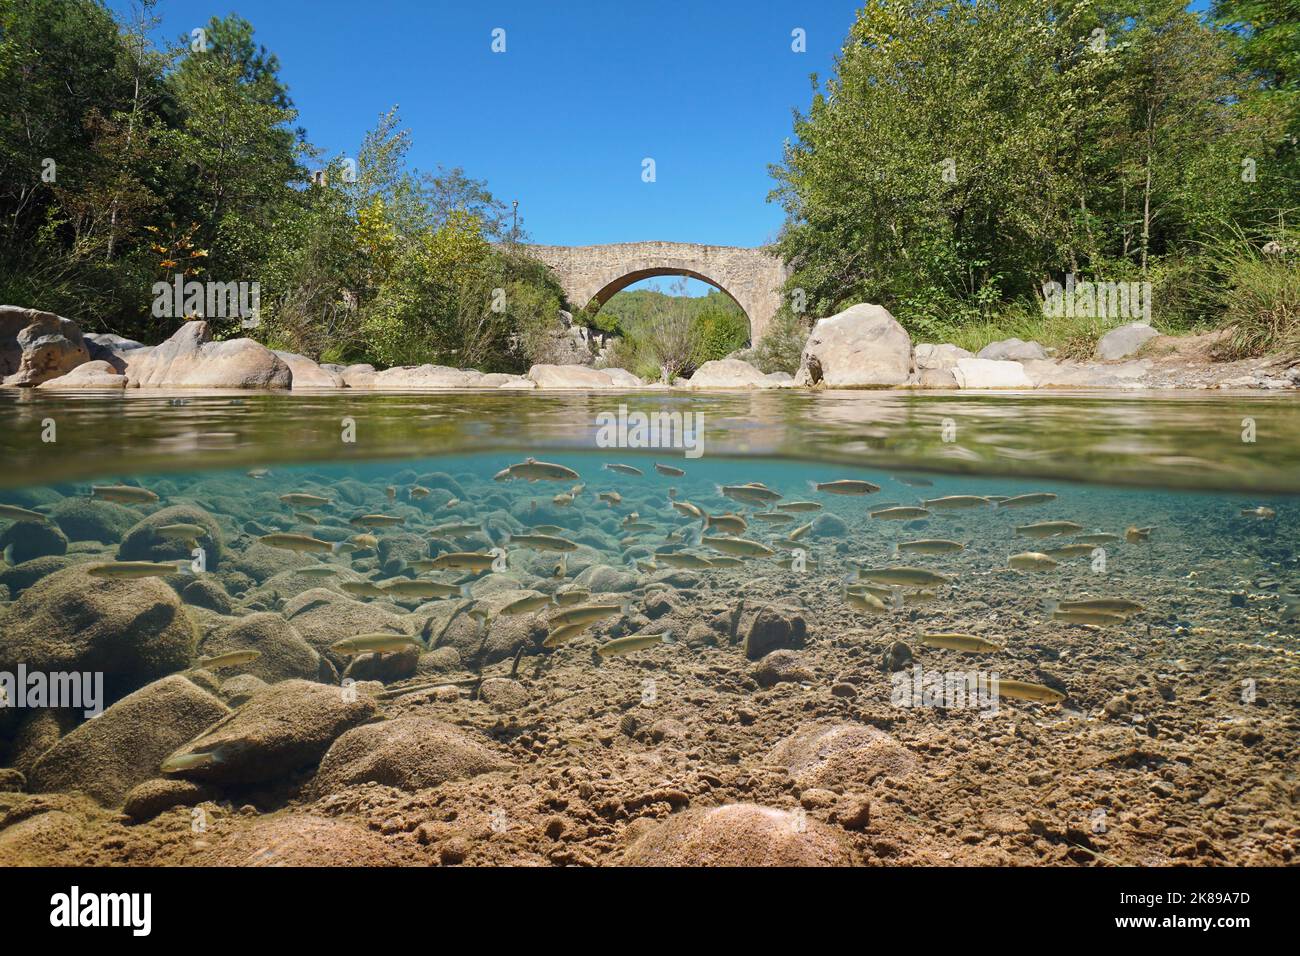 Rivière avec un pont en pierre et un haut de poissons sous l'eau (poisson-chub), vue sur et sous la surface de l'eau, Catalogne, Espagne Banque D'Images